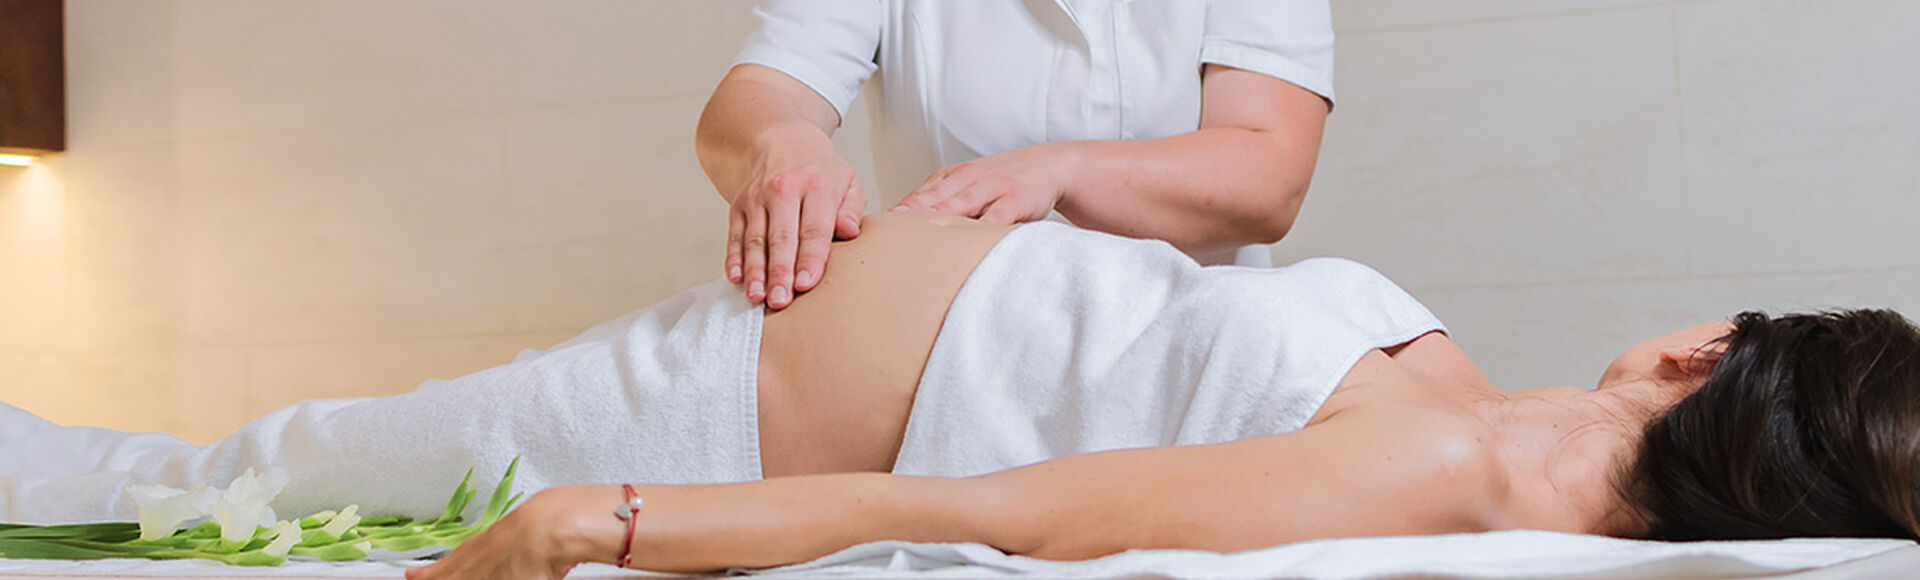 Contra-indicações em massagens para Grávidas